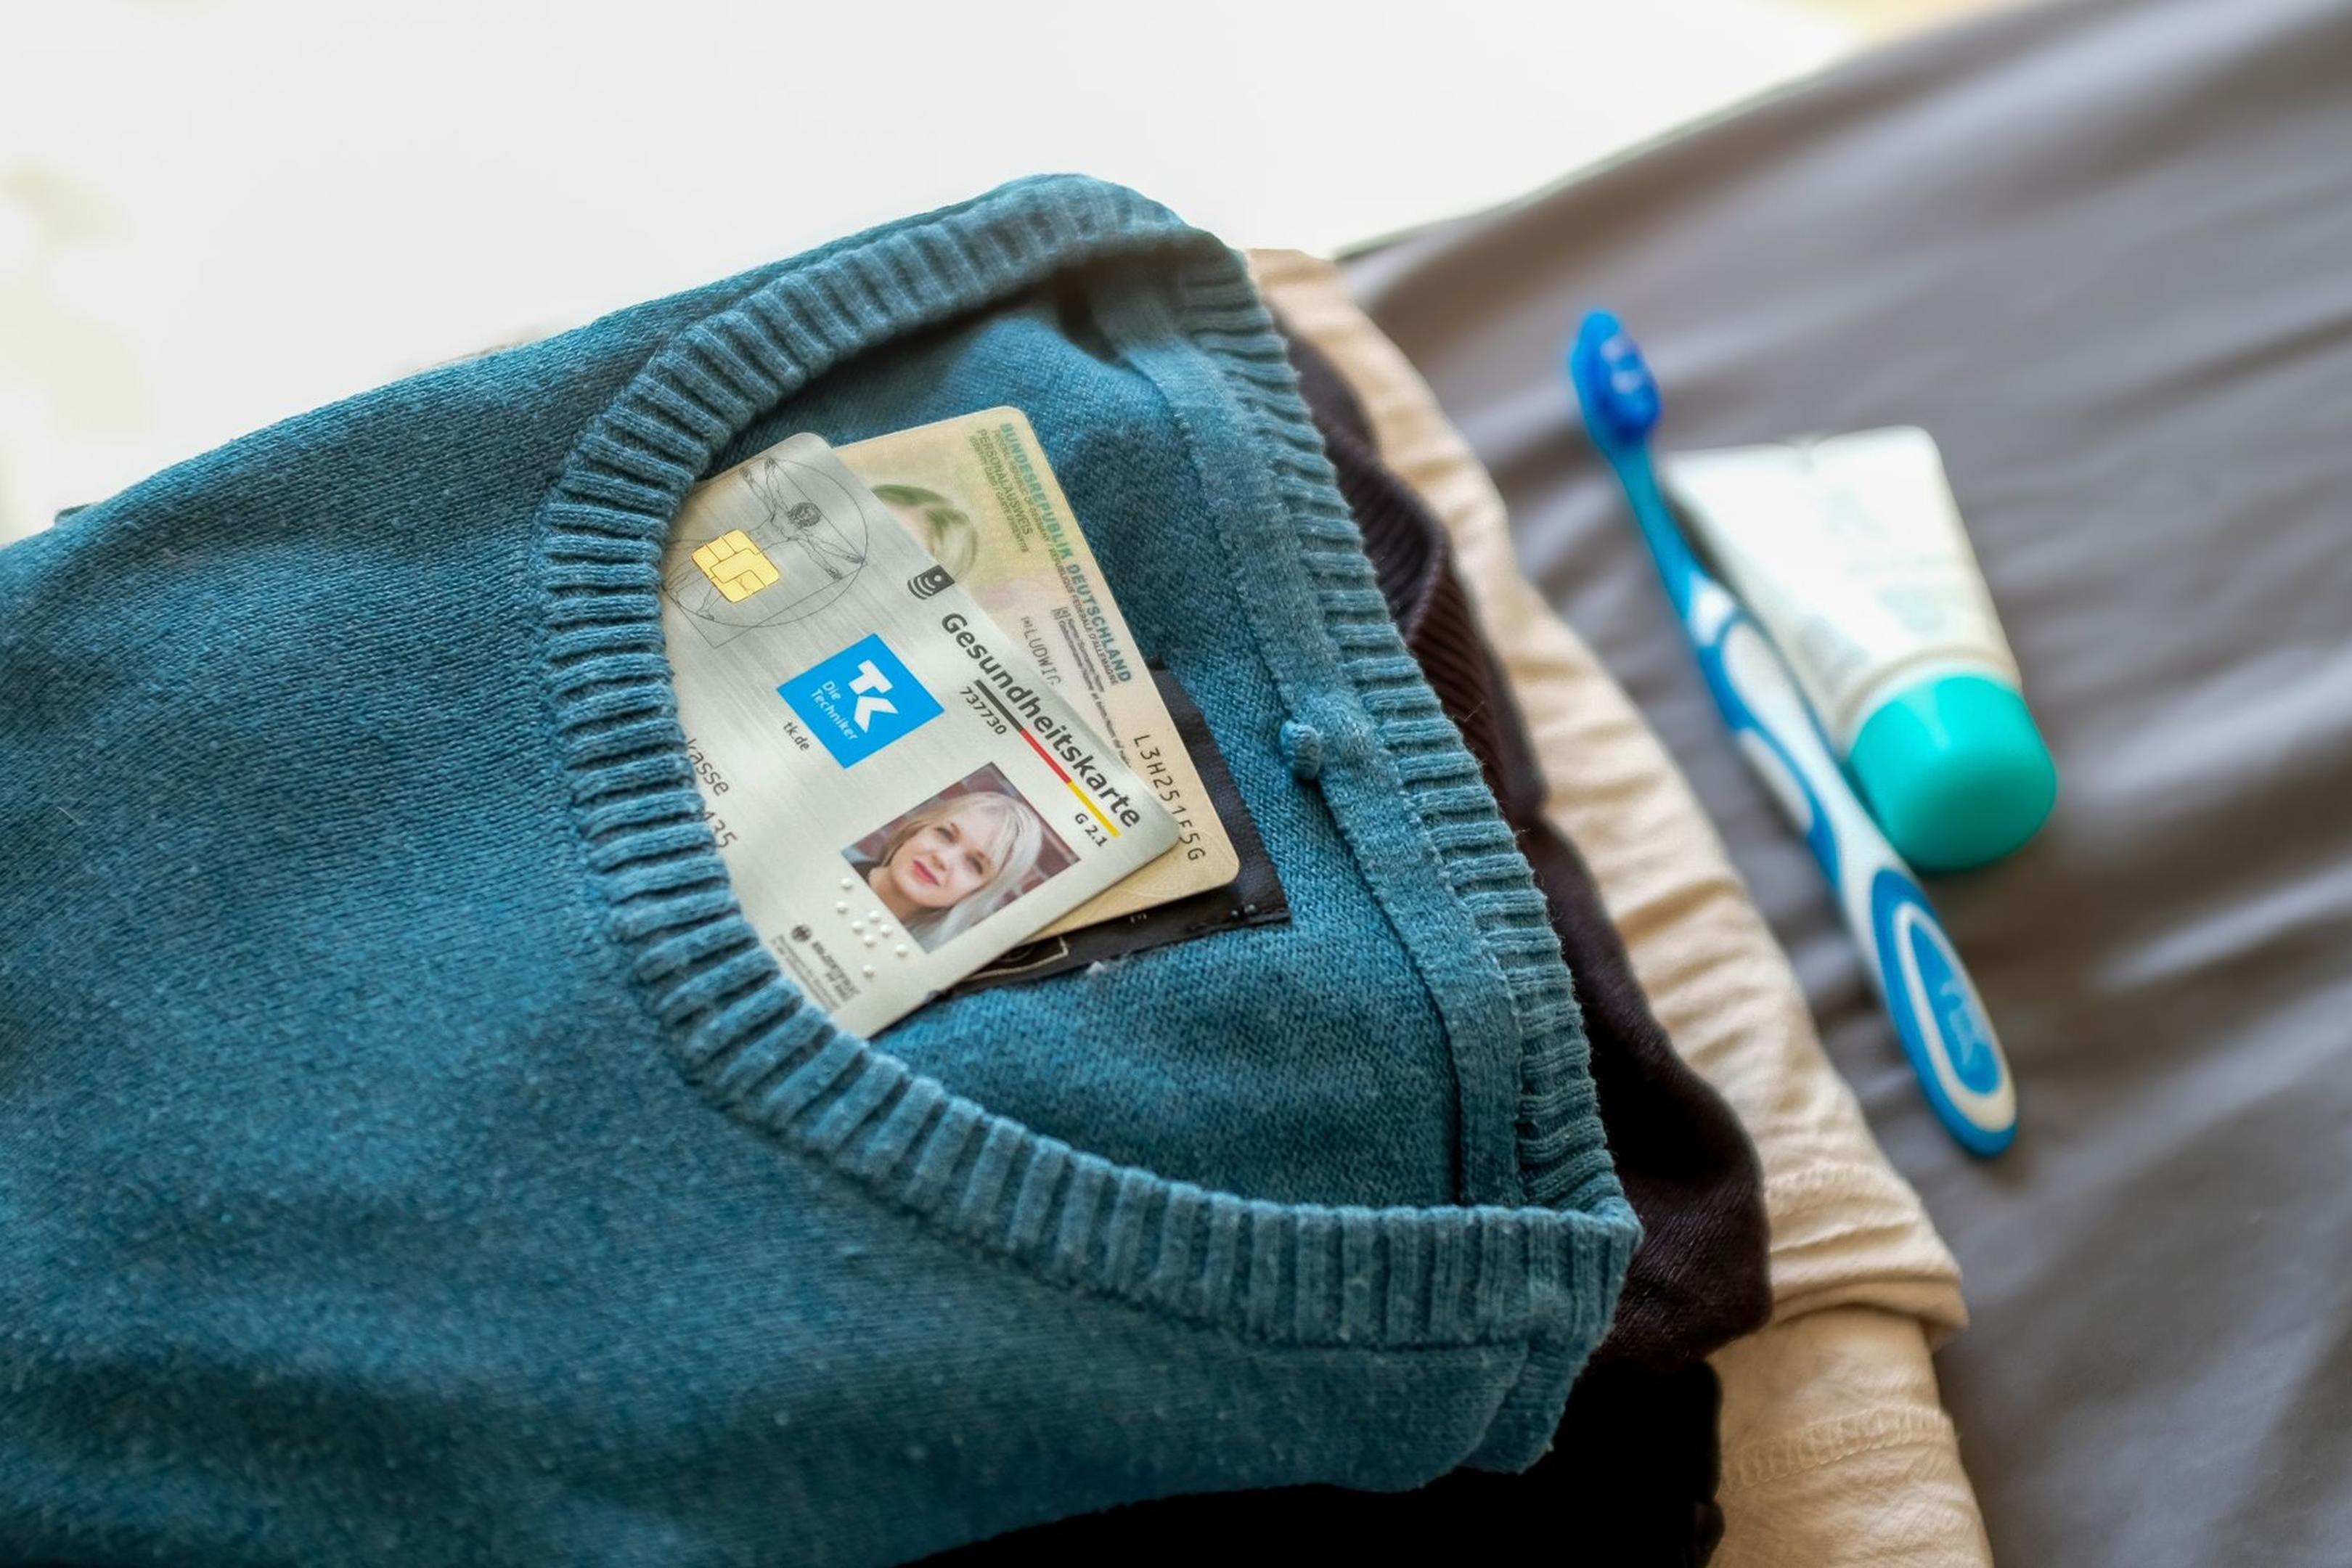 Gemütliche Klamotten, Zahnbürste, Versichertenkarte: Das gehört vor einem Krankenhausaufenthalt auf jeden Fall in die Tasche.